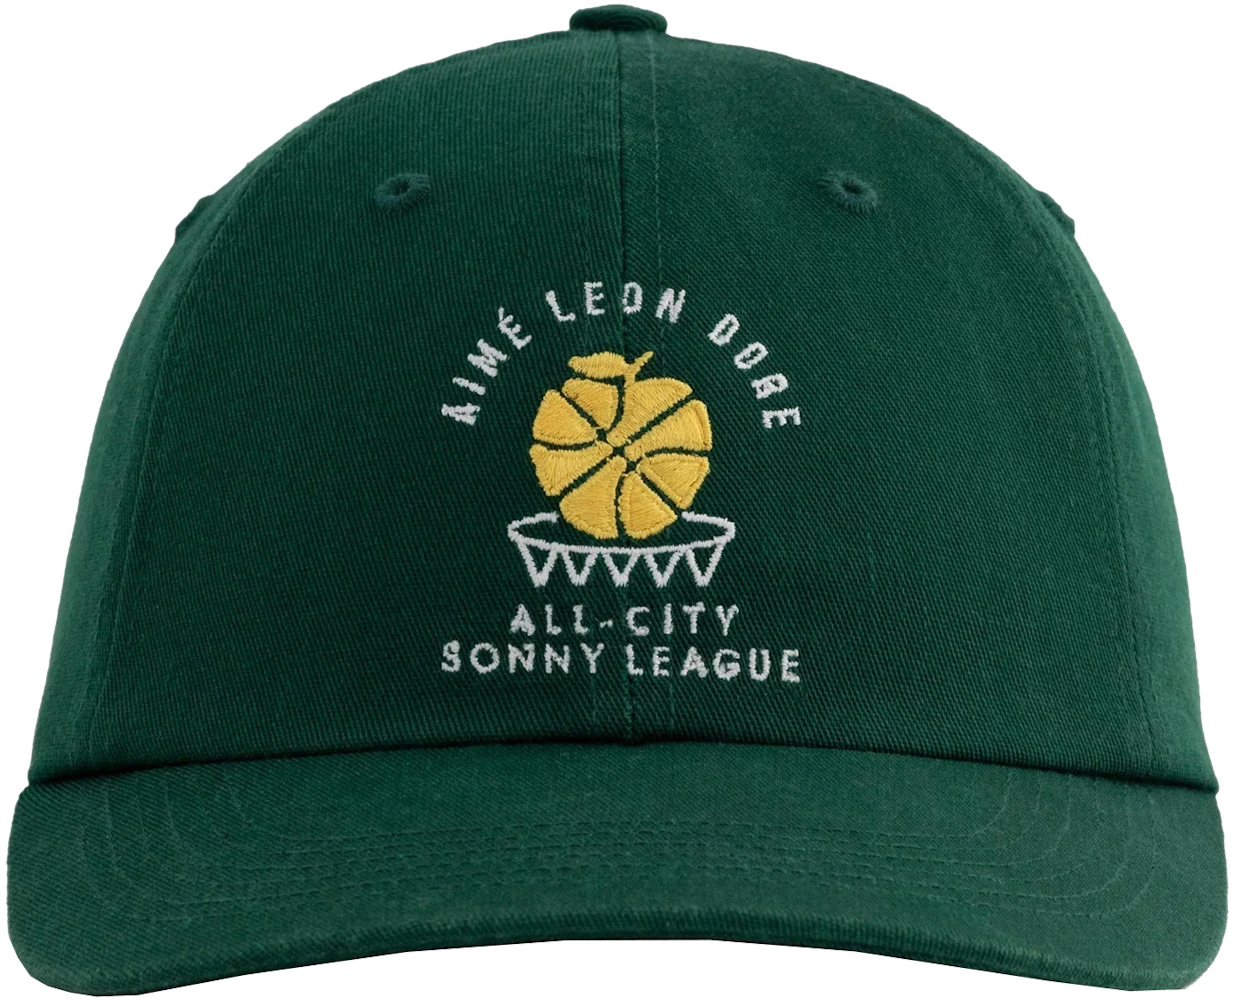 Aime Leon Dore ALD / New Balance SONNY League Hat